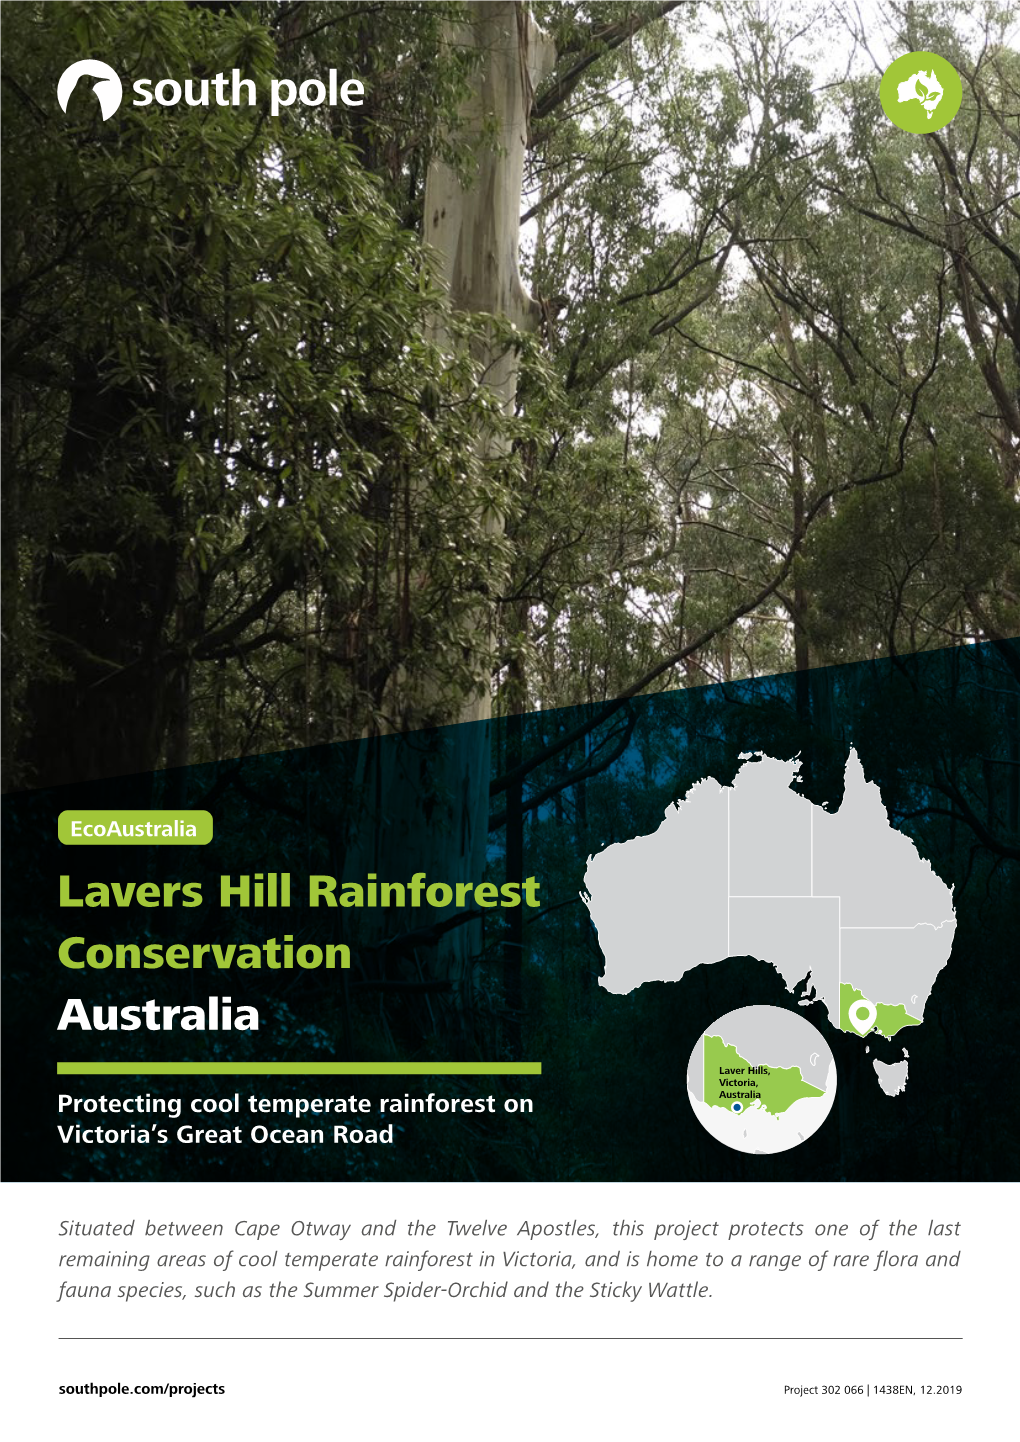 Lavers Hill Rainforest Conservation Australia